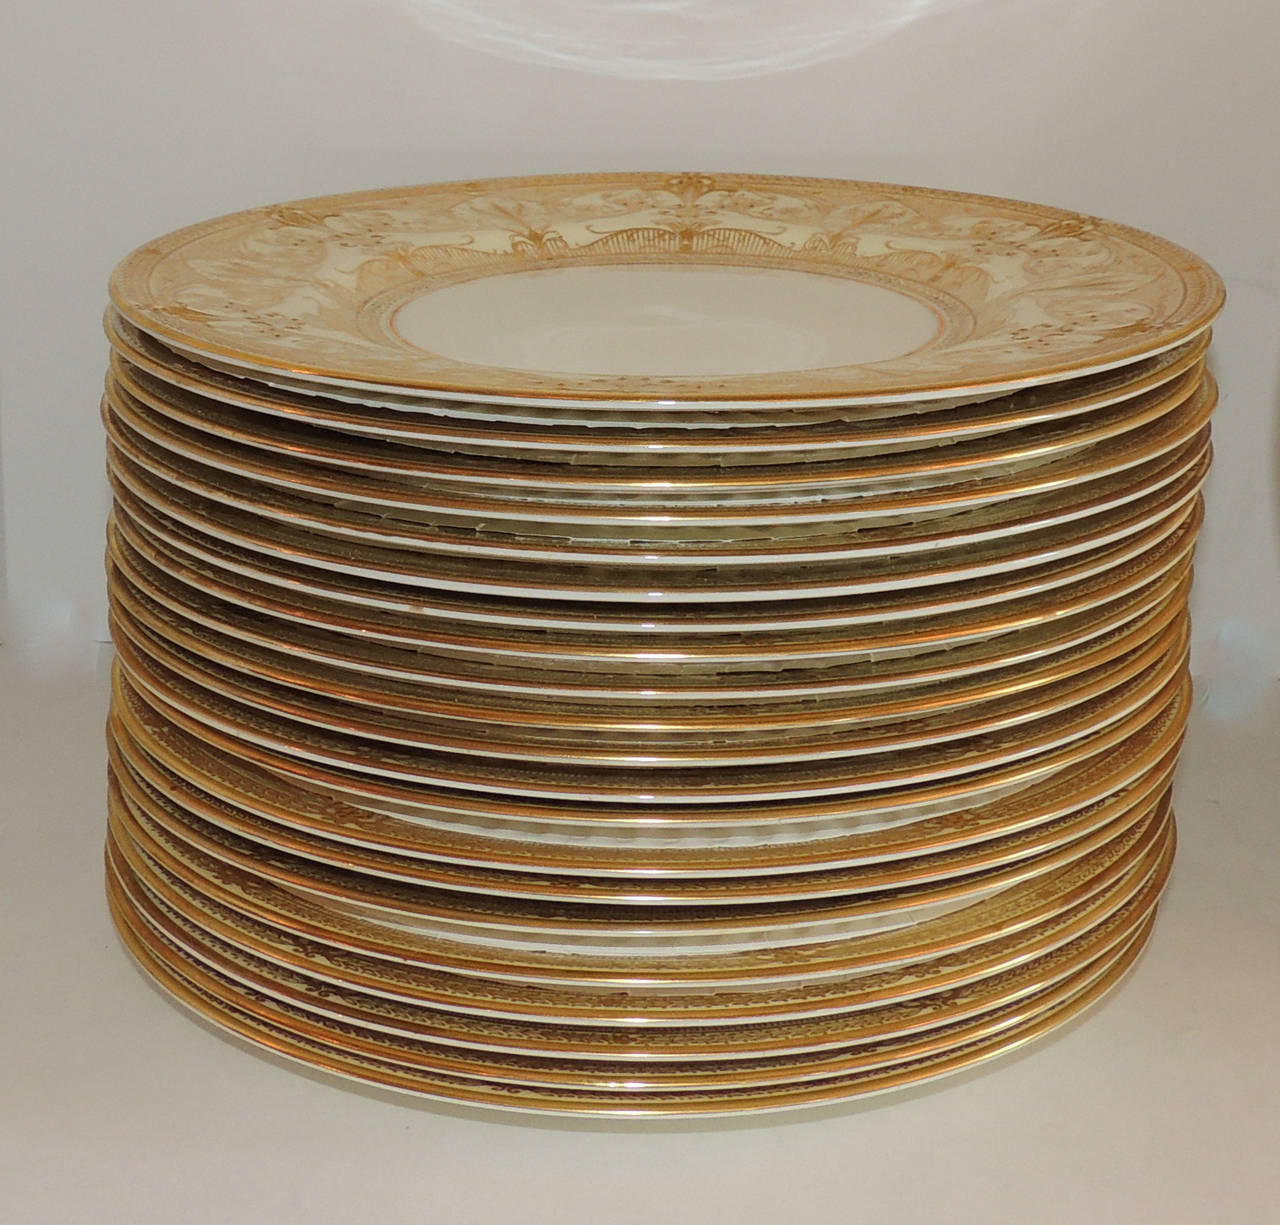 English Elegant Set Of 24 Royal Worcester Gold Encrusted Ivory Dinner Service Plates